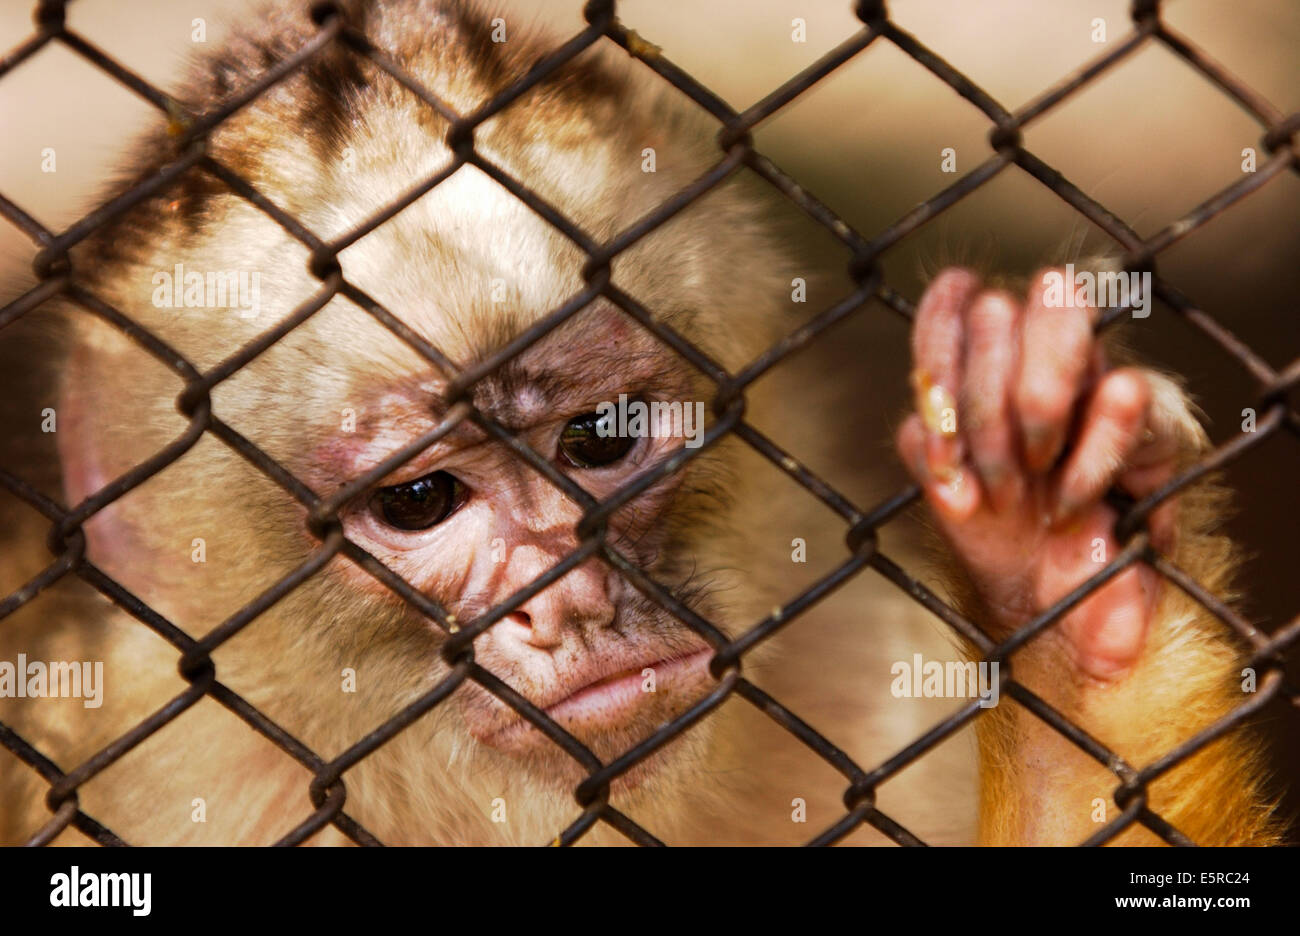 Monkey in captivity. Stock Photo